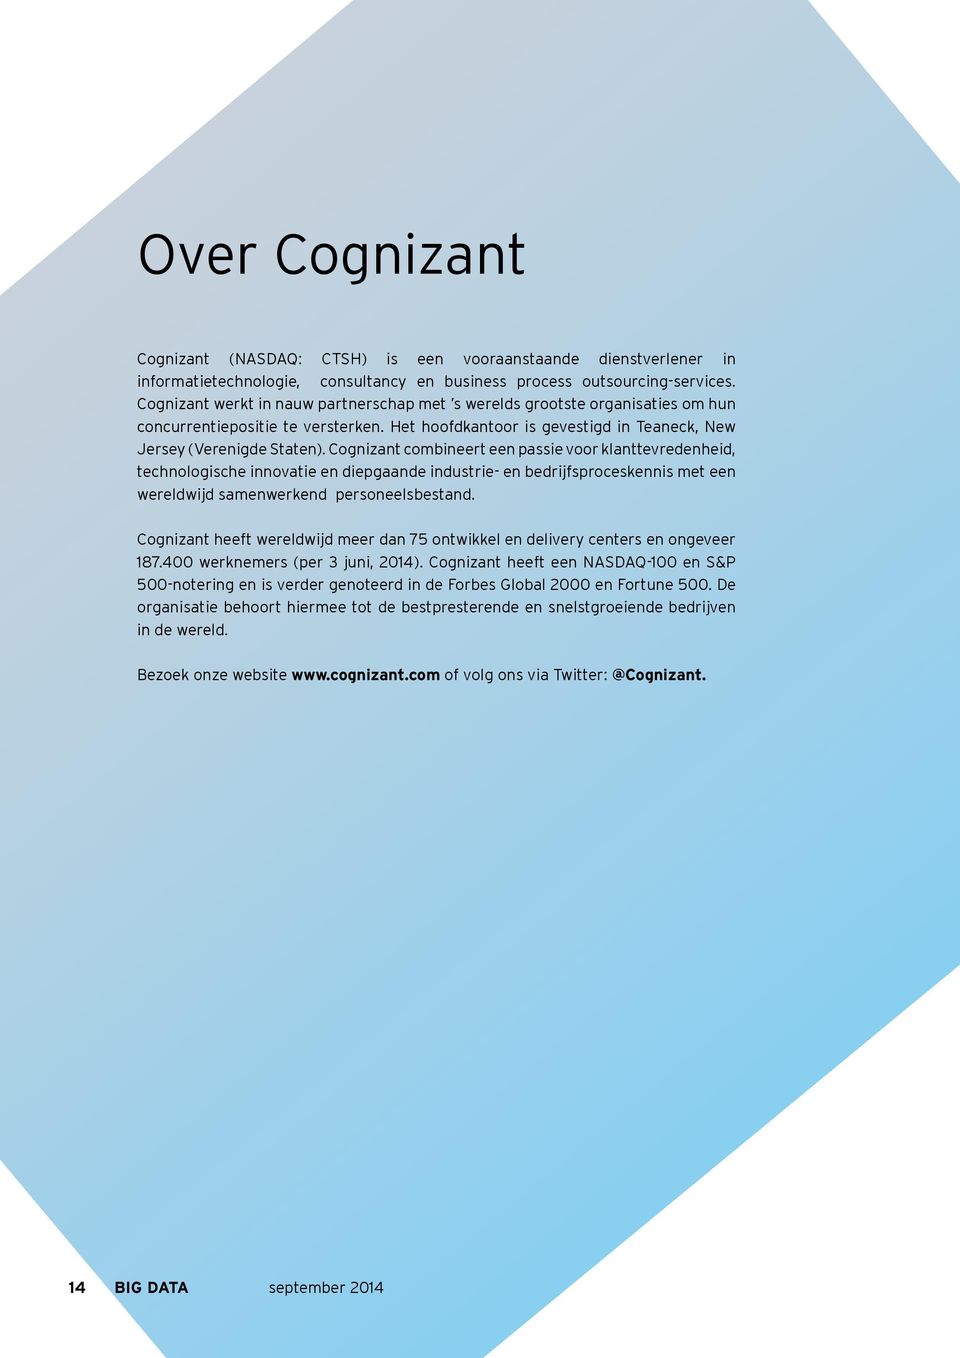 Cognizant combineert een passie voor klanttevredenheid, technologische innovatie en diepgaande industrie- en bedrijfsproceskennis met een wereldwijd samenwerkend personeelsbestand.